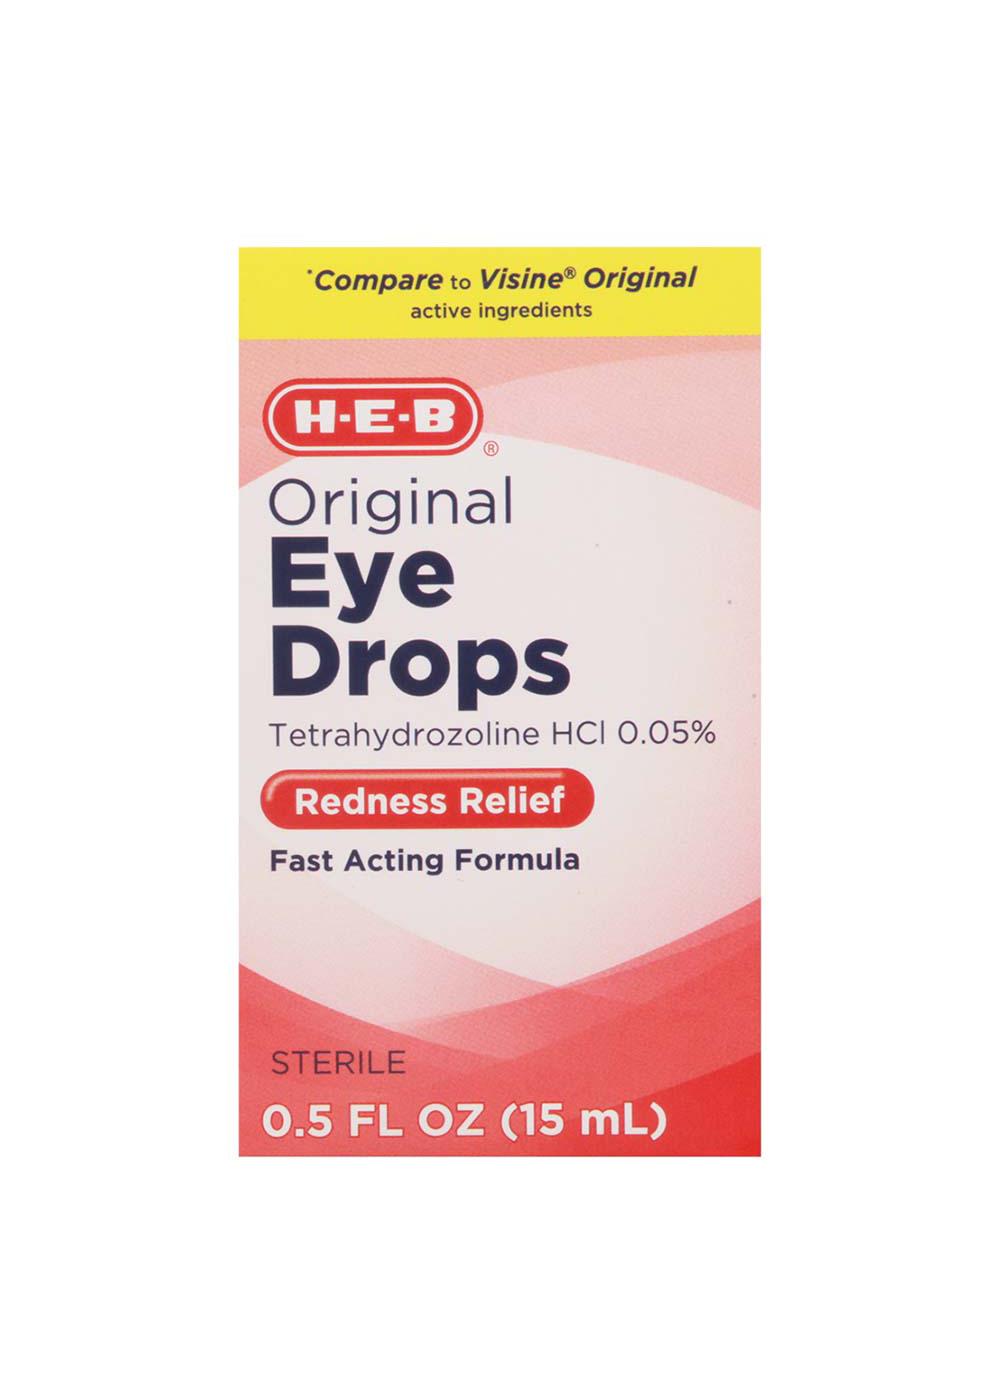 H-E-B Original Eye Drops Redness Relief